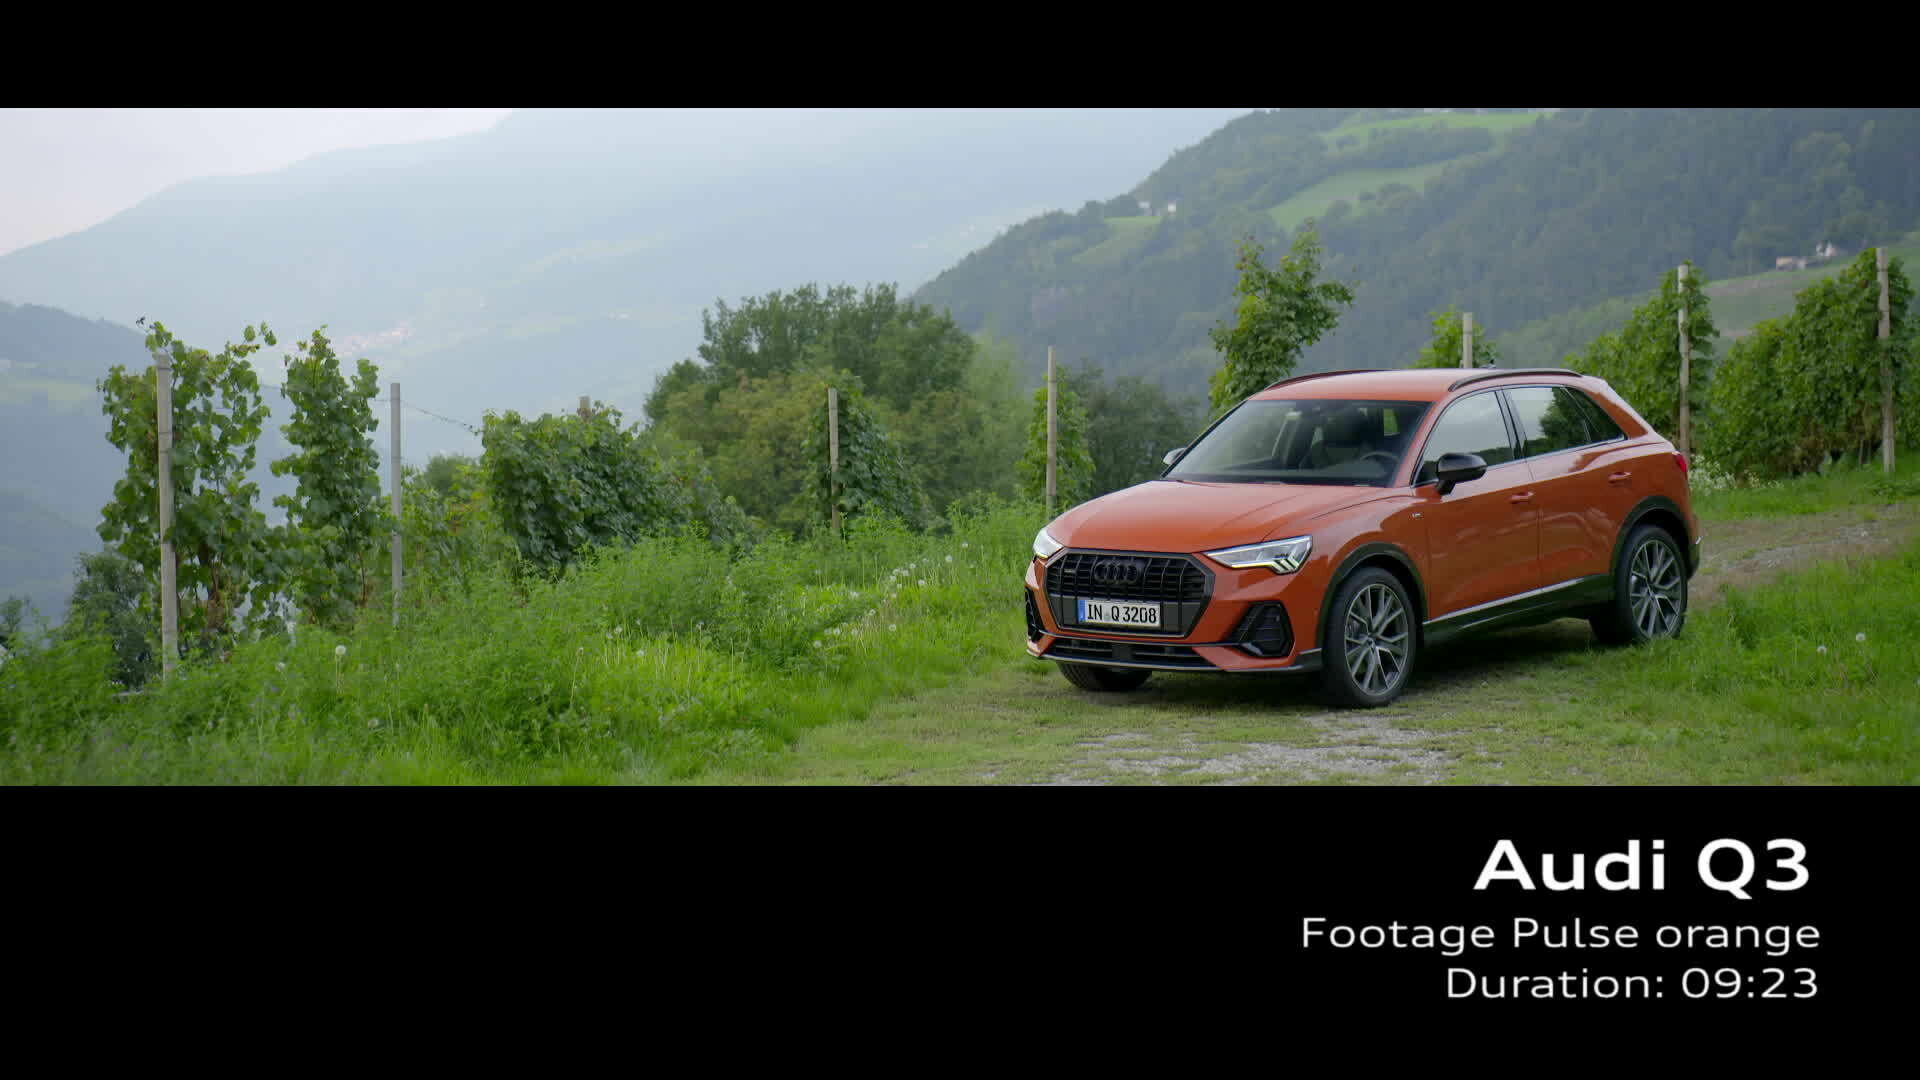 Audi Q3 Footage Pulse orange (2018)